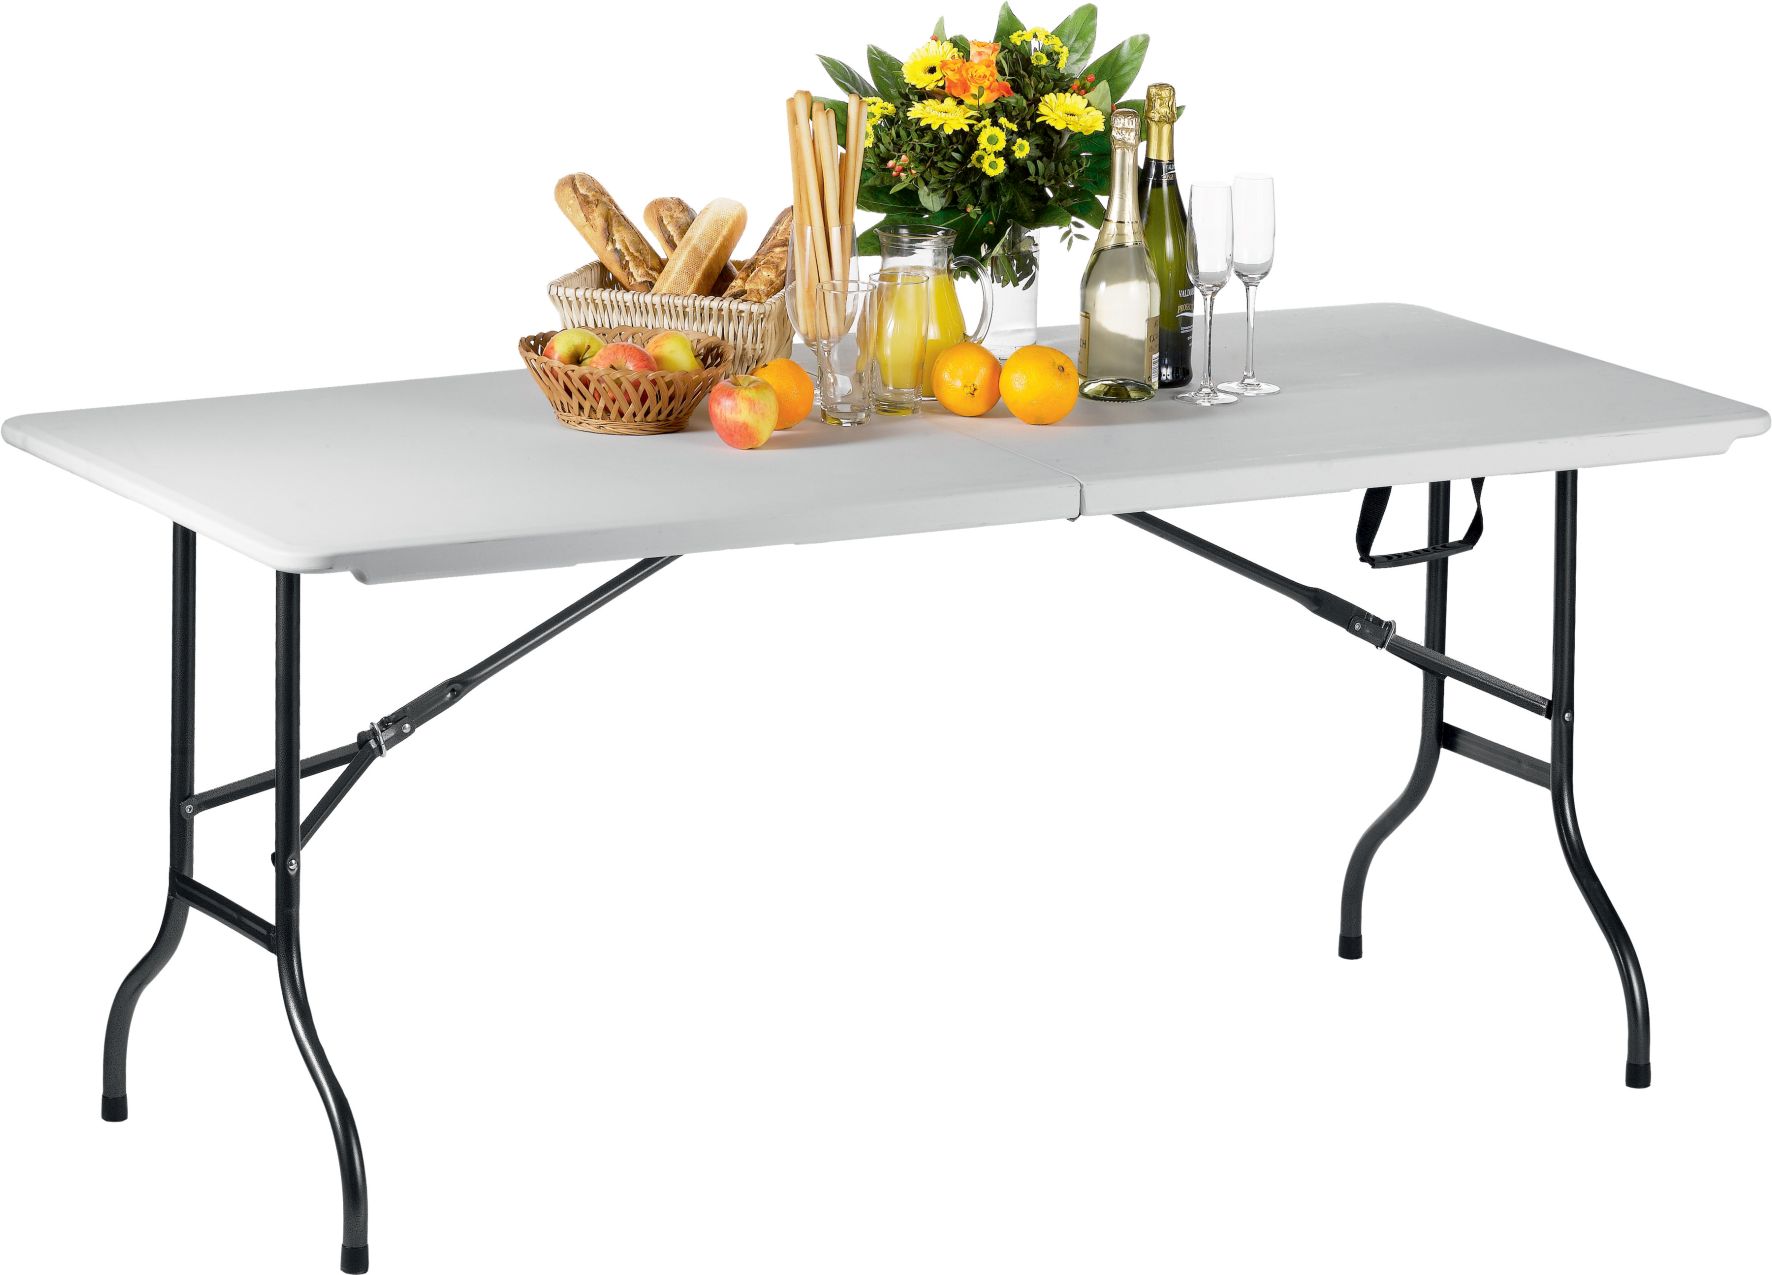 Table pliante - Blanche - Pliable au milieu - max 100 kg